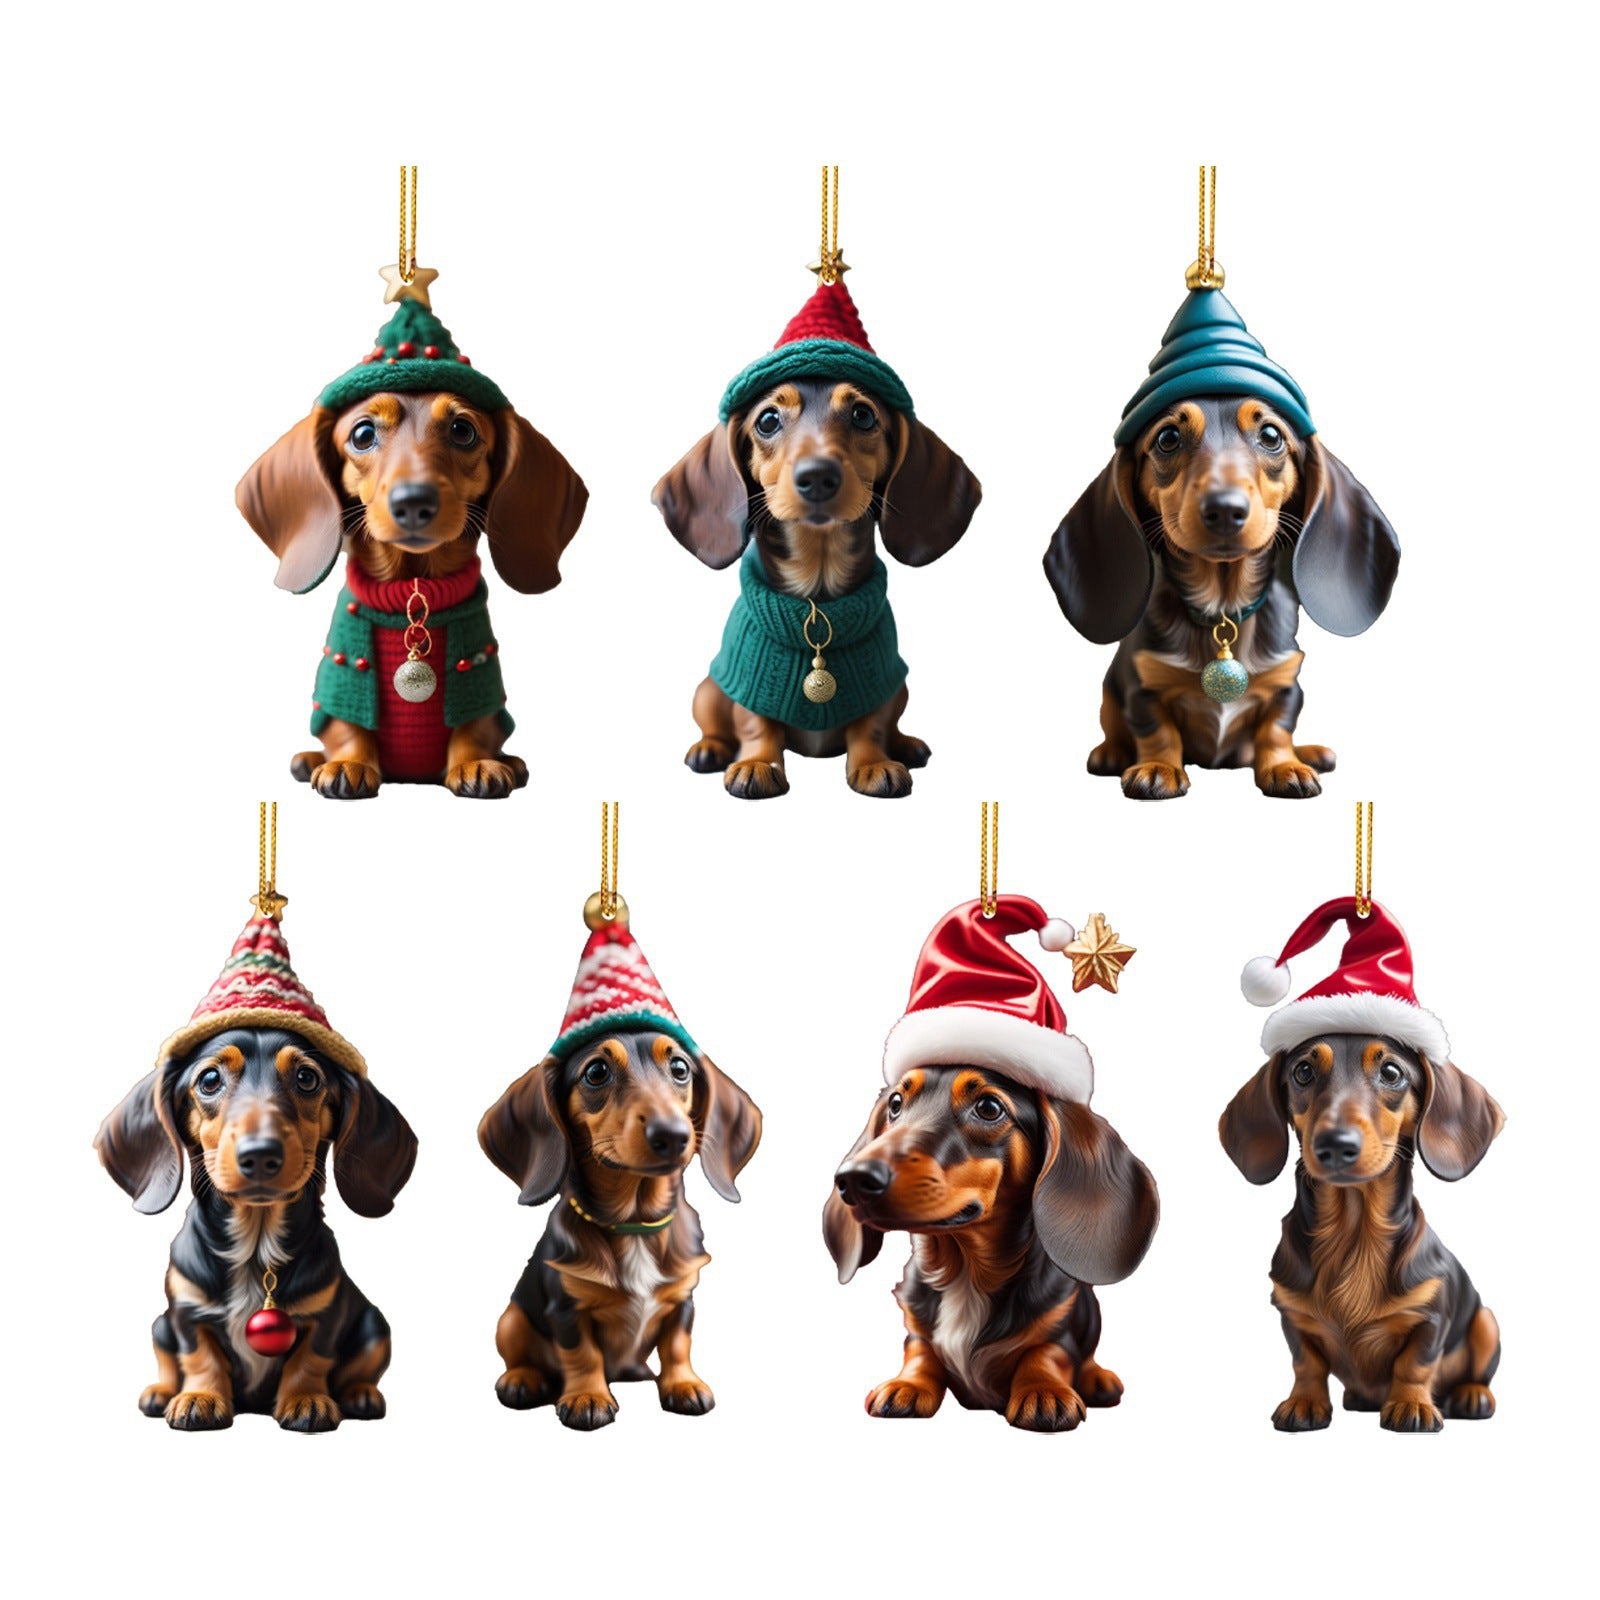 Adornos colgantes  de perro salchicha navideño para decoración-Christmas Sausage Dog Modeling Hanging Ornaments For Decoration